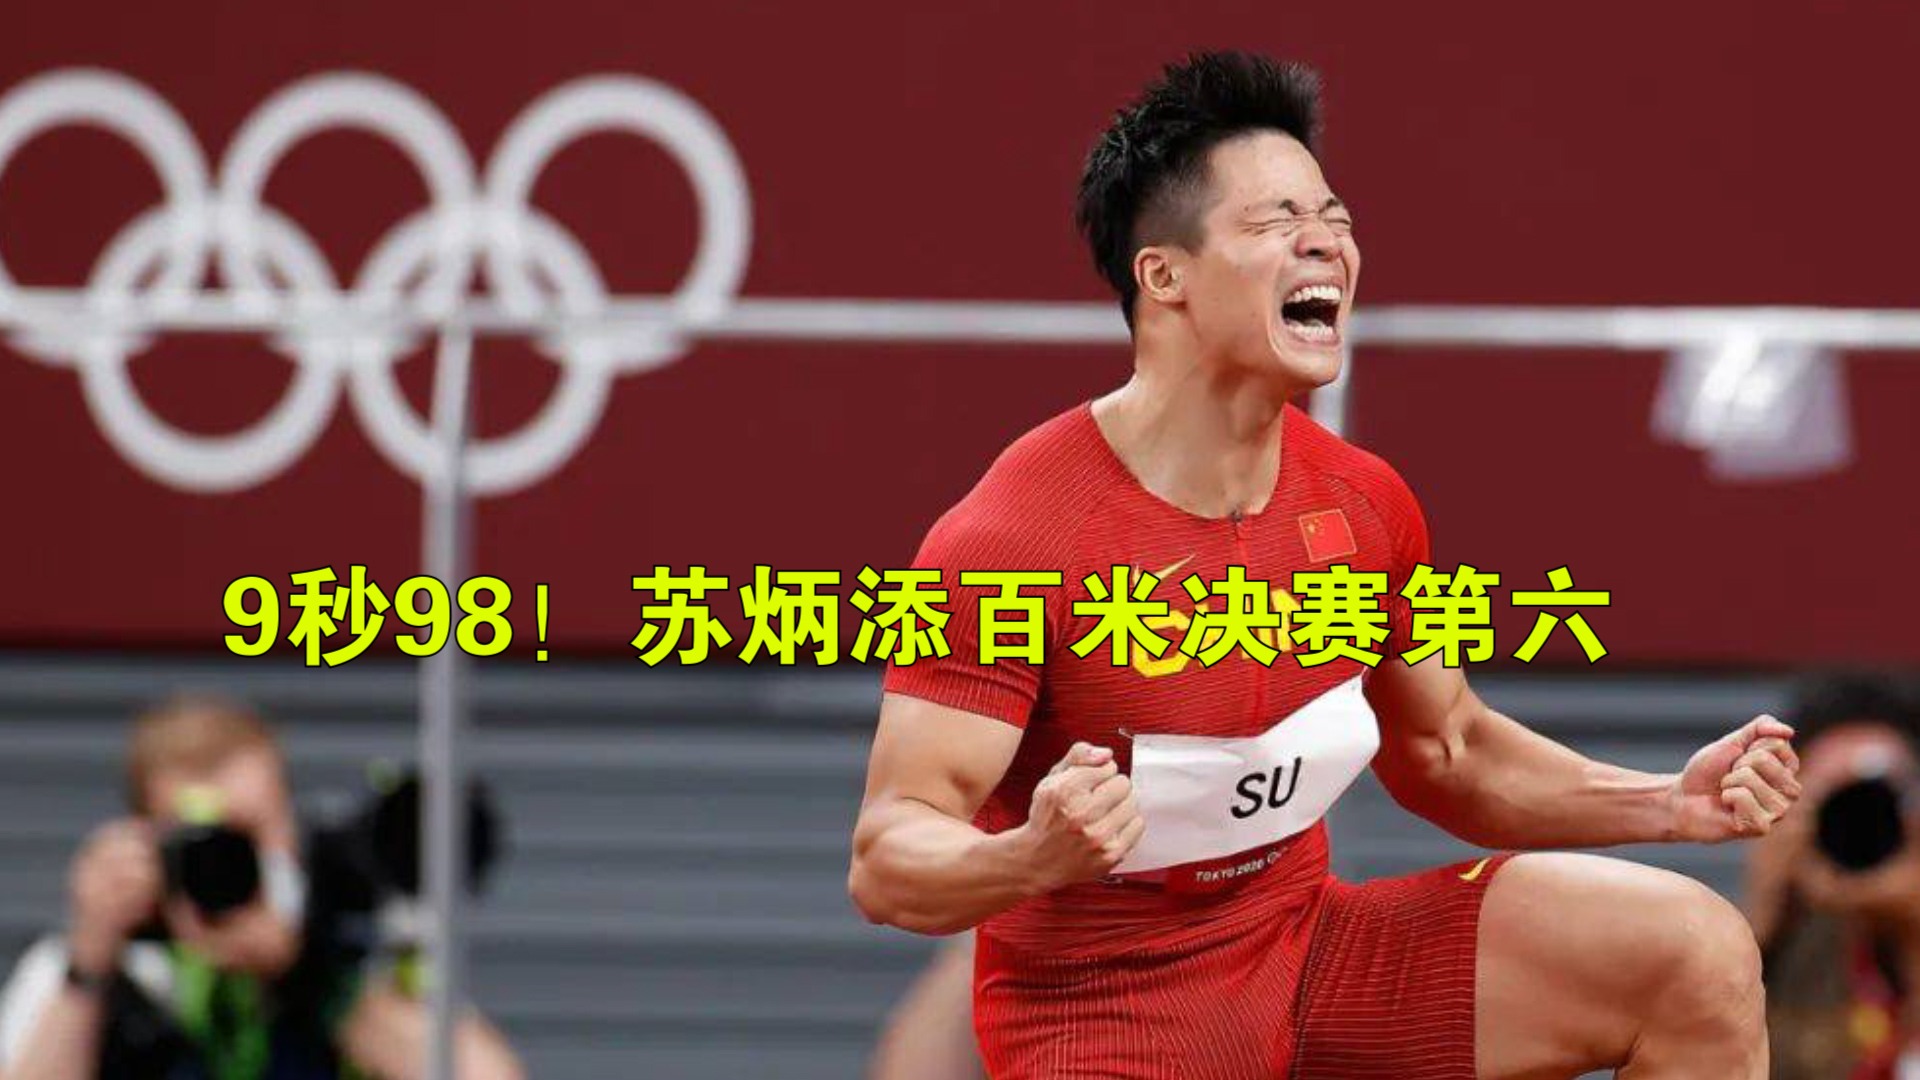 9秒98苏炳添百米决赛第六人民日报致敬中国速度